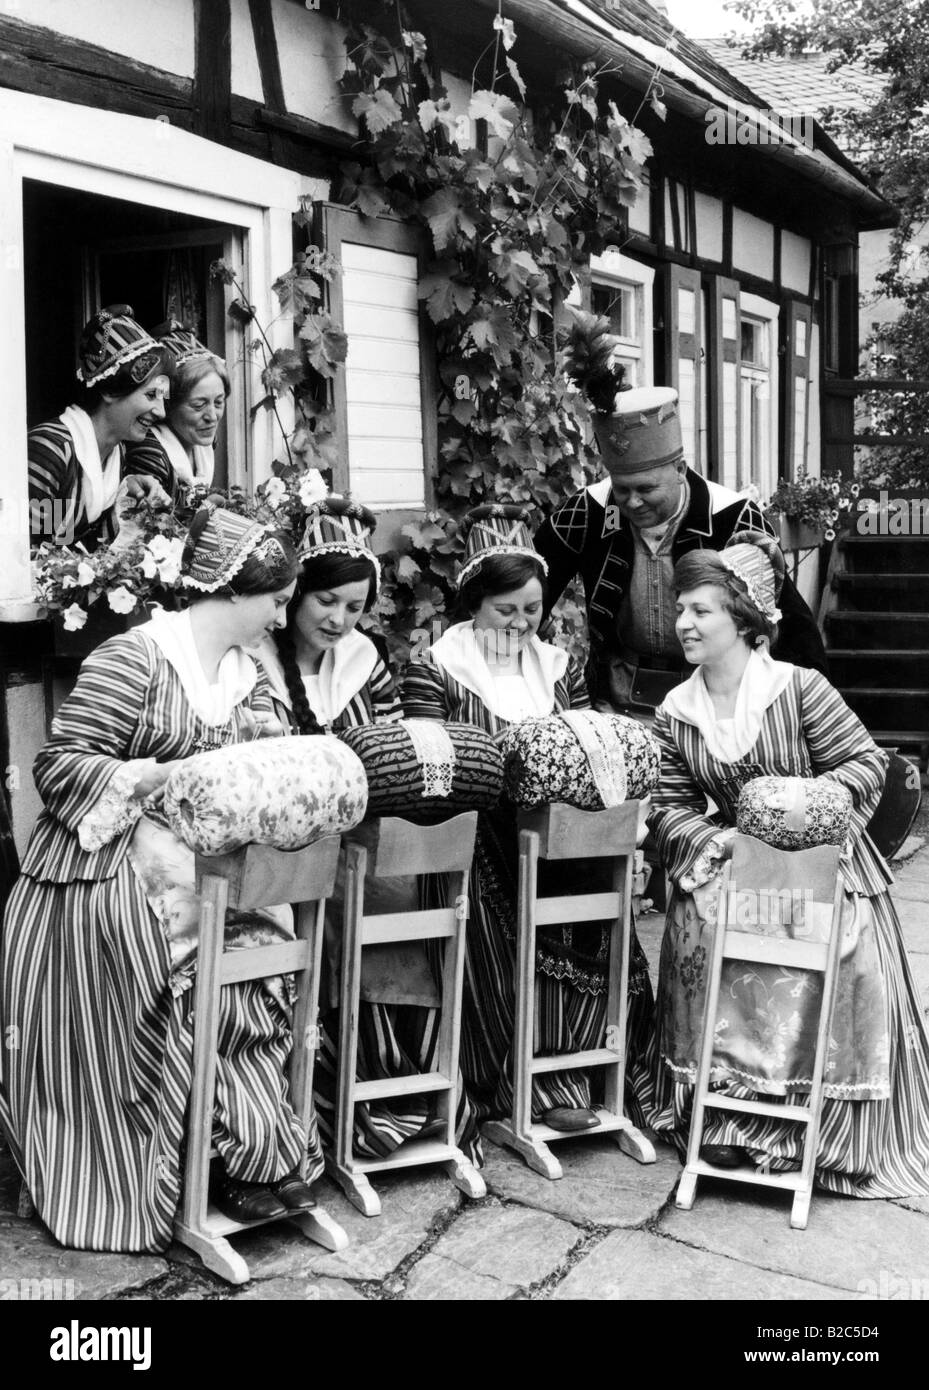 Les femmes portant des vêtements, tricot, trational photo historique d'environ 1920 Banque D'Images